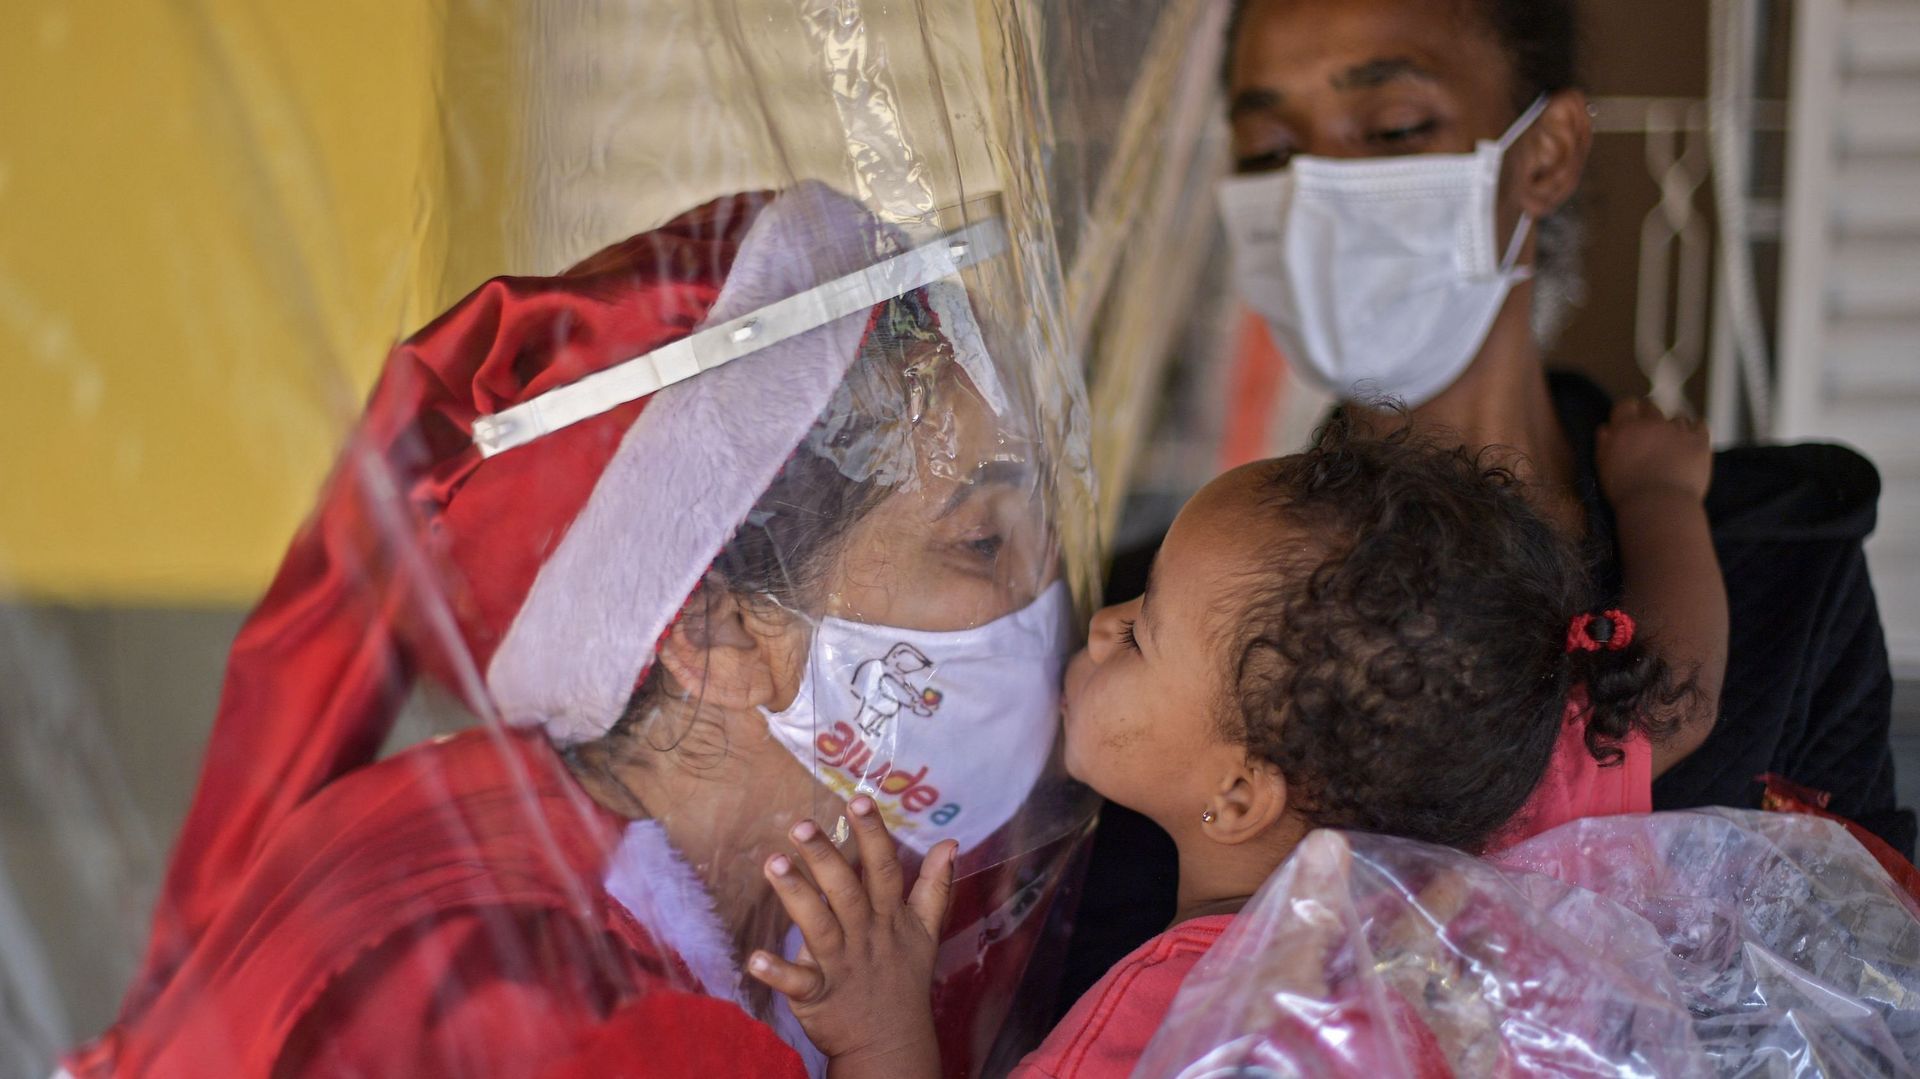 Une photo prise à Noël au Brésil, entre une volontaire et une enfant précarisée séparée par un rideau en plastique, coronavirus oblige.